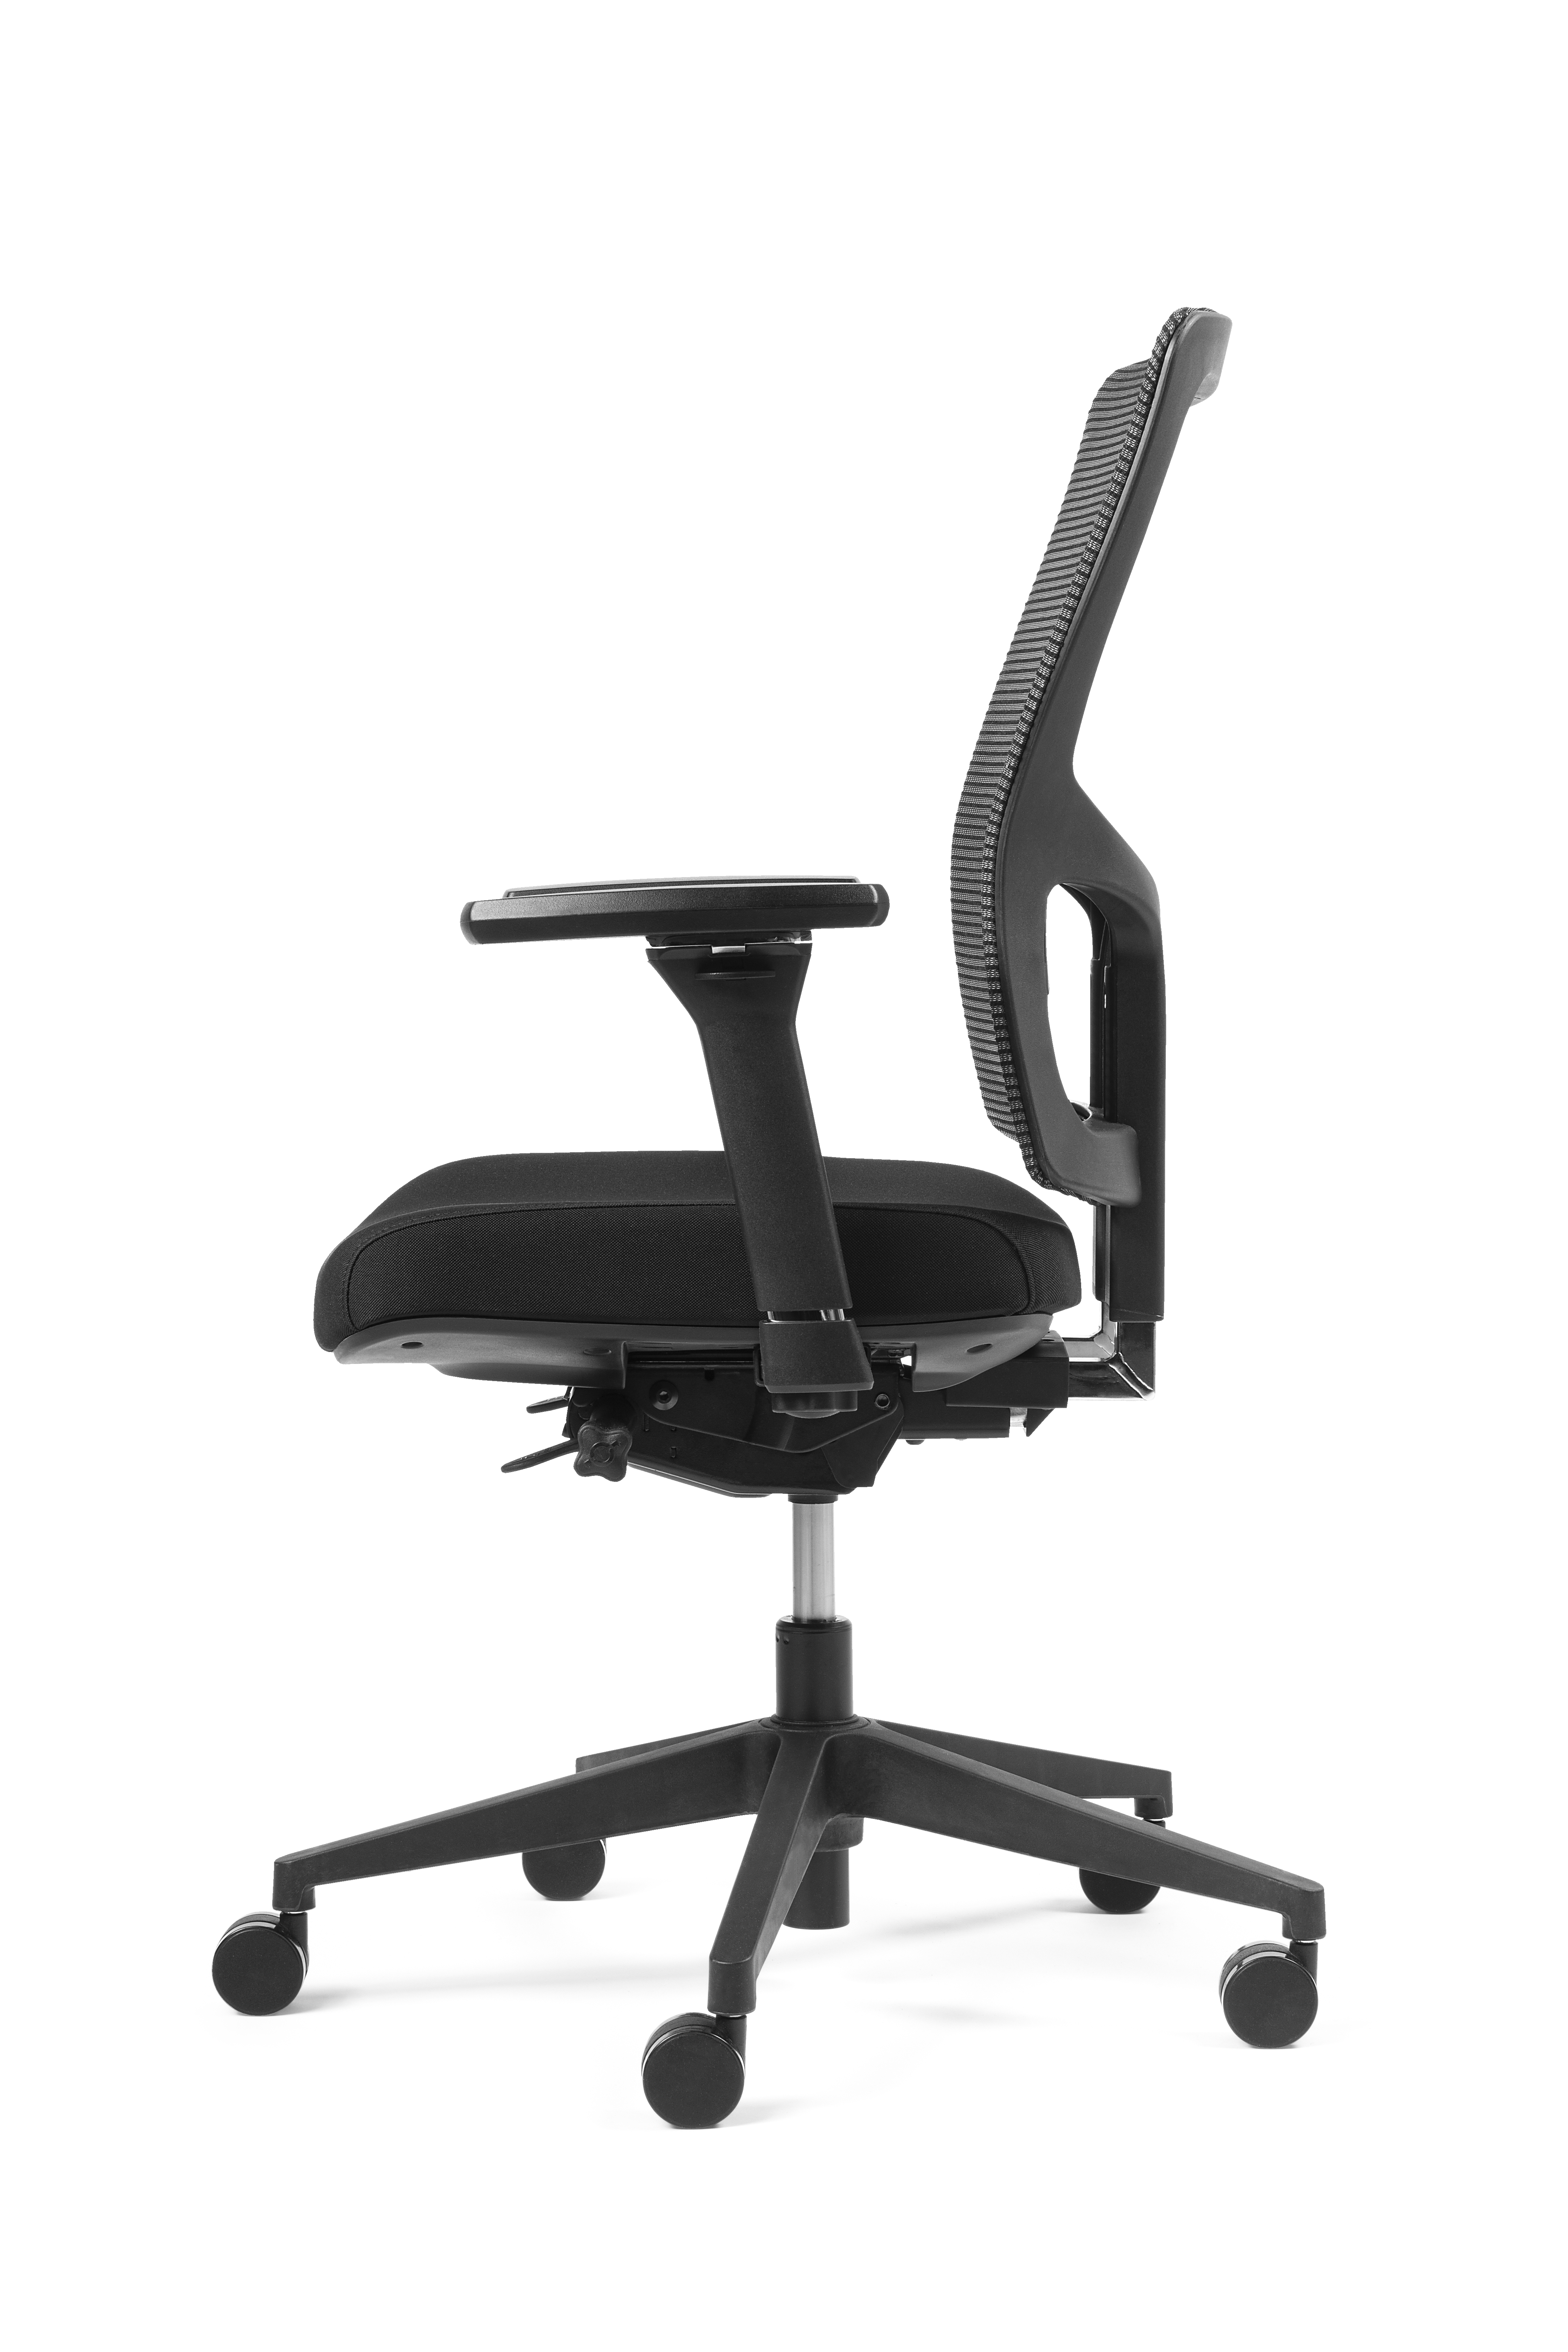 ProjectChair ergonomische bureaustoel B05